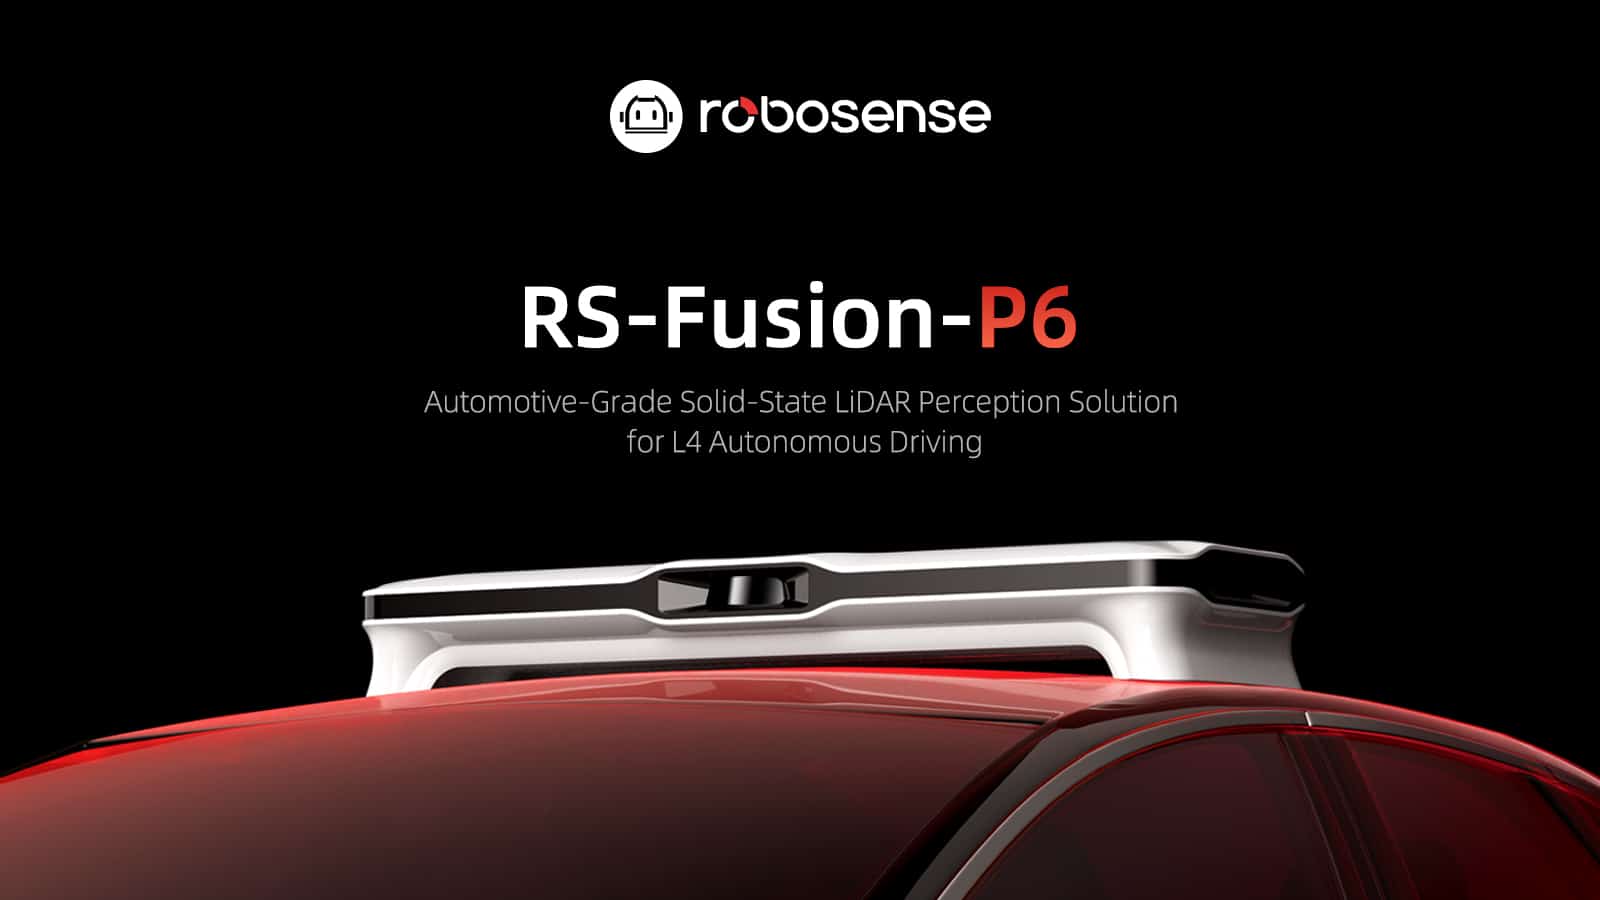 RoboSense Launches Automotive-Grade Solid-State LiDAR Perception Solution for Autonomous Driving